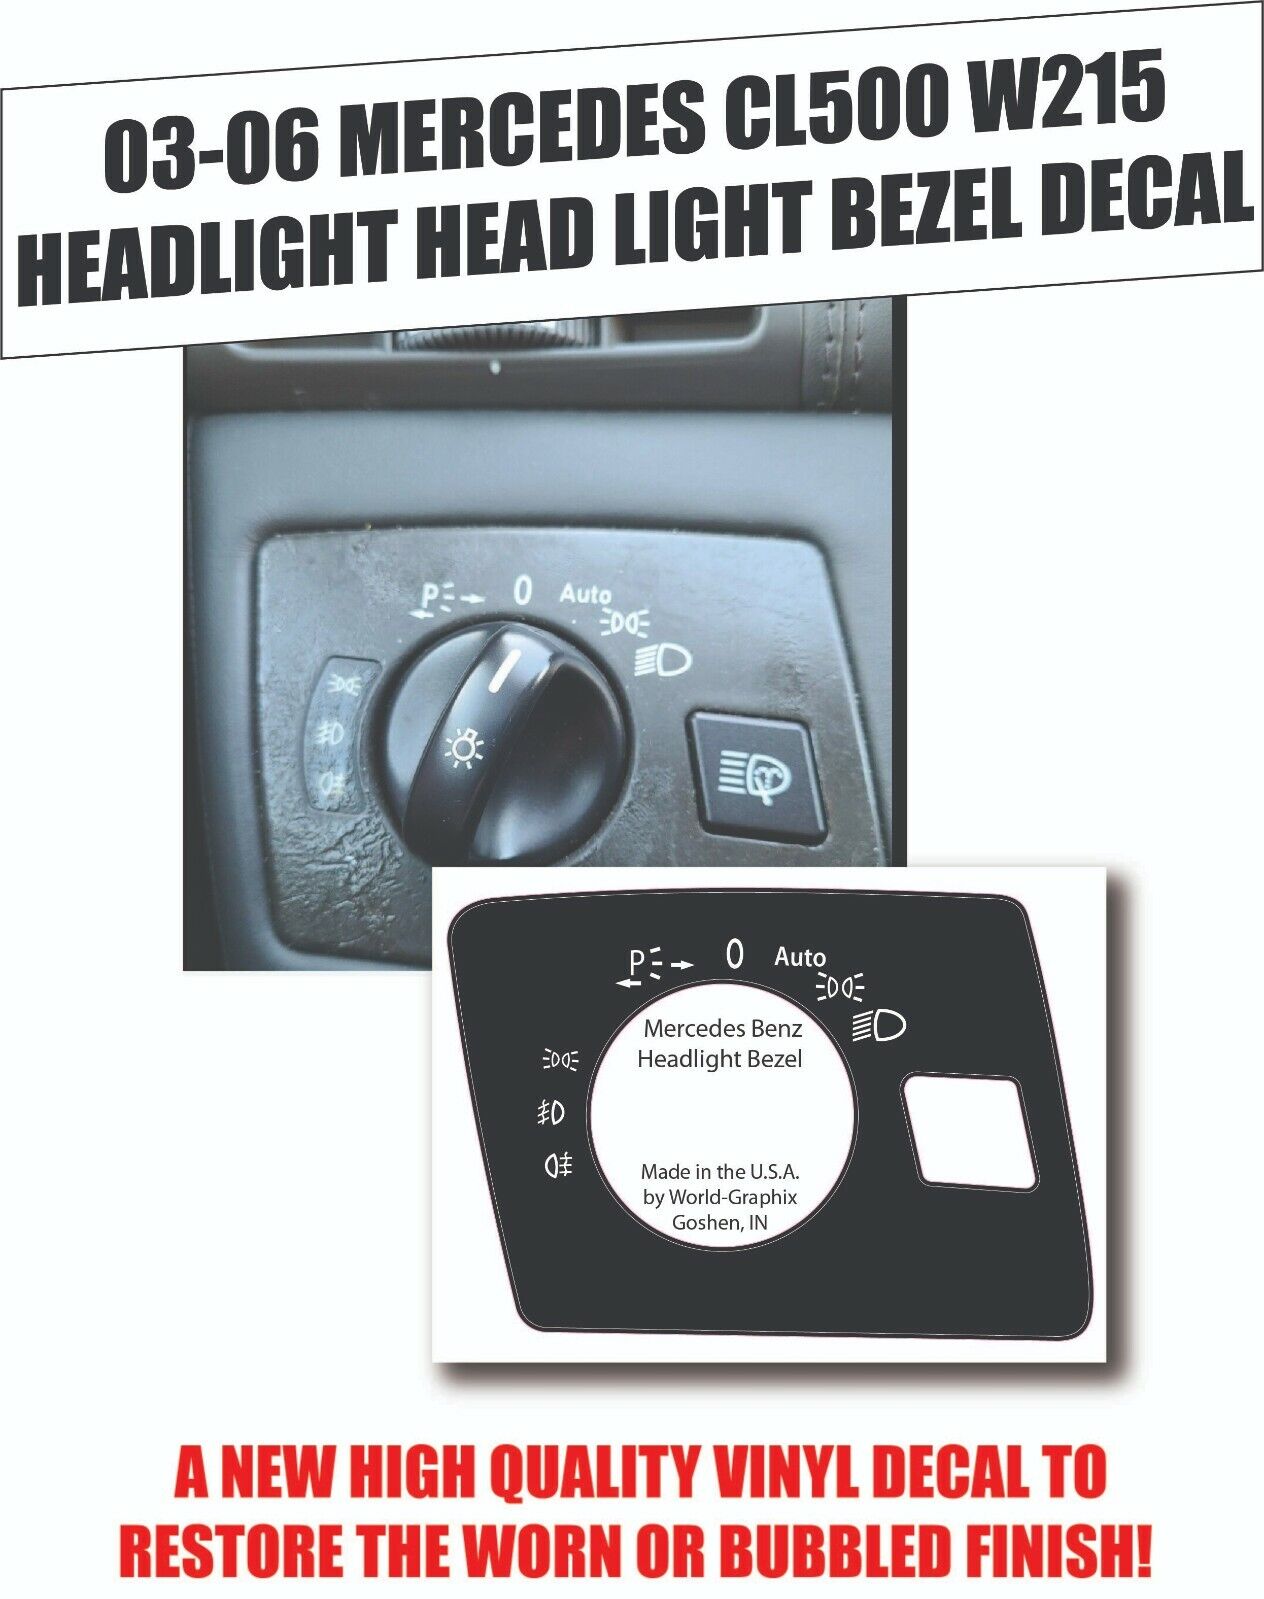 03-06 MERCEDES CL W215 HEADLIGHT BEZEL REPAIR DECAL STICKER